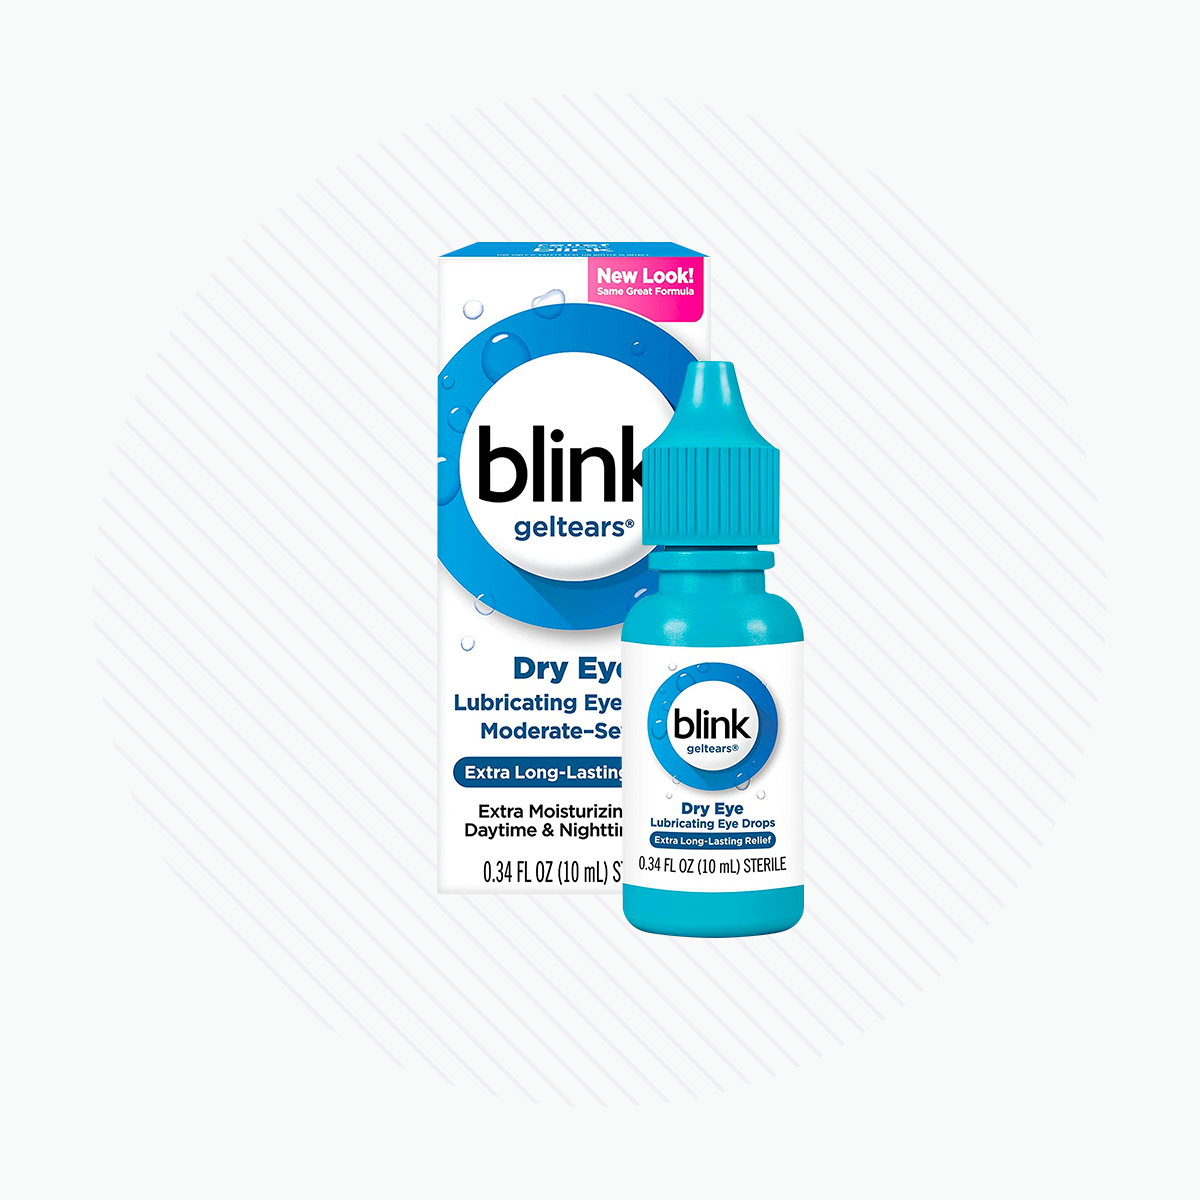 Blink Gel Tears Lubricating Eye Drops 2-Pack (2 x 10ml bottles)